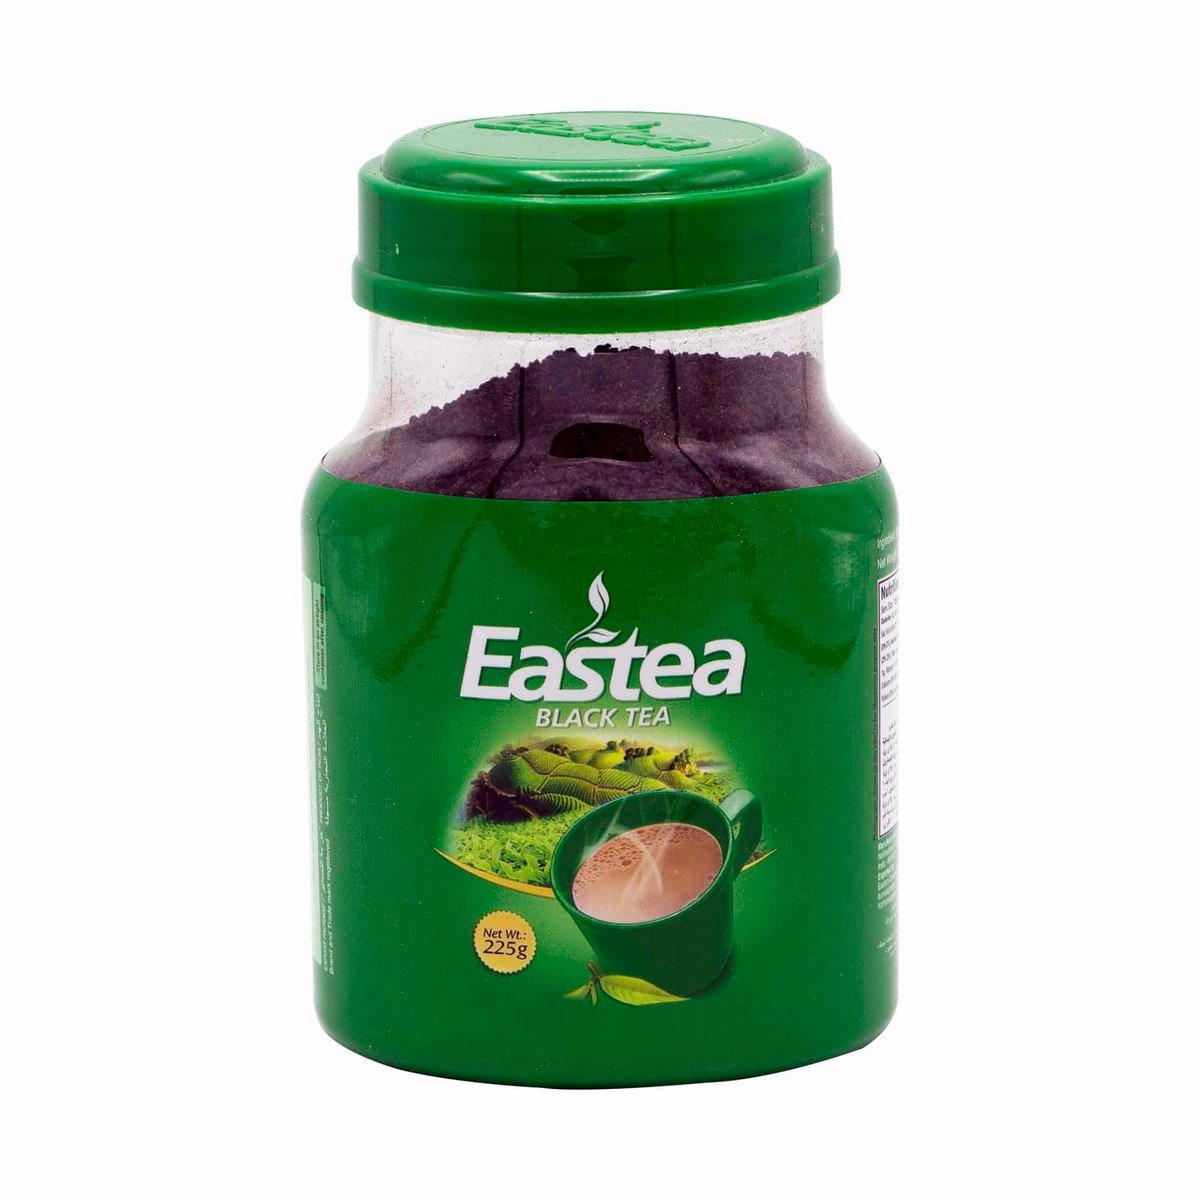 Eastea Black Tea 225g